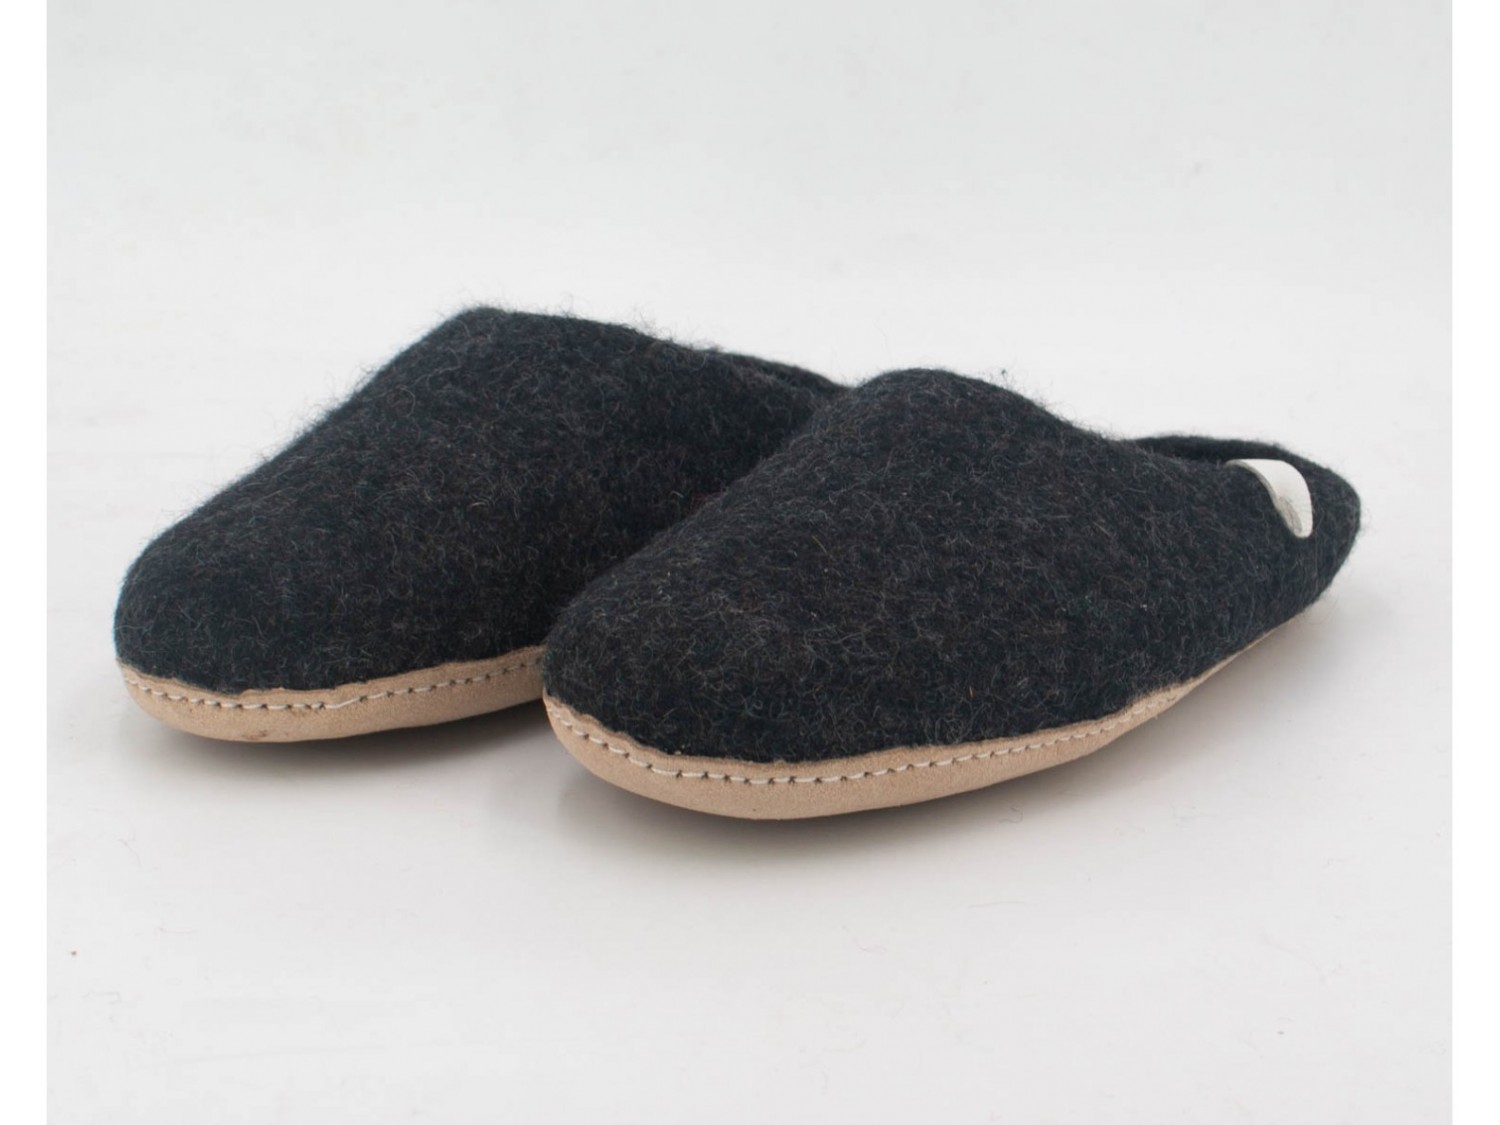 Buy 100% Handmade Wool Felt Shoes by Felt and Yarn